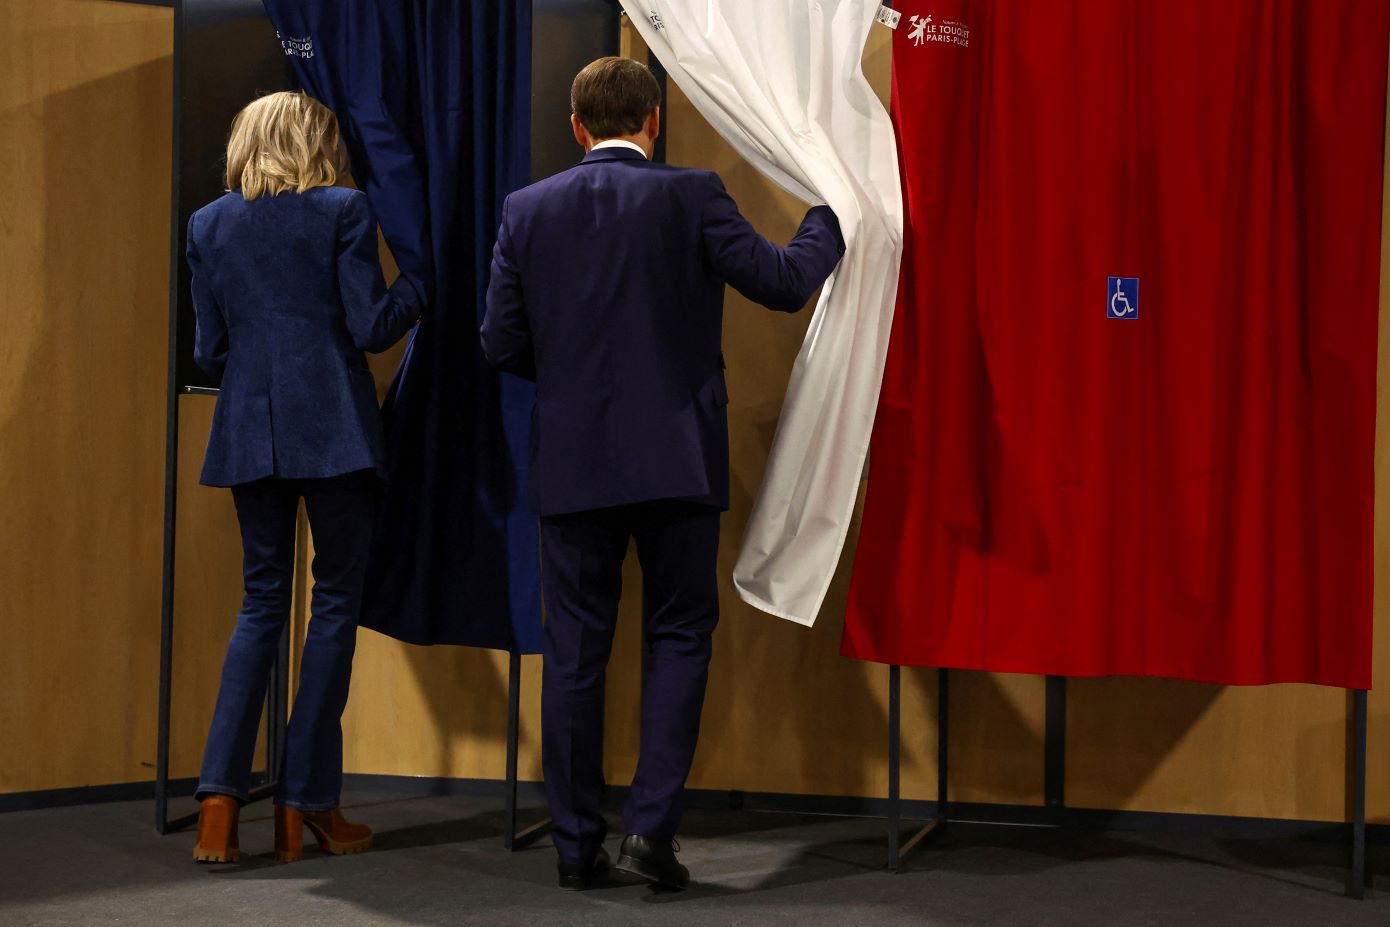 Εκλογές στη Γαλλία: Και δεύτερη δημοσκόπηση δείχνει την ακροδεξιά να μη συγκεντρώνει την απόλυτη πλειοψηφία